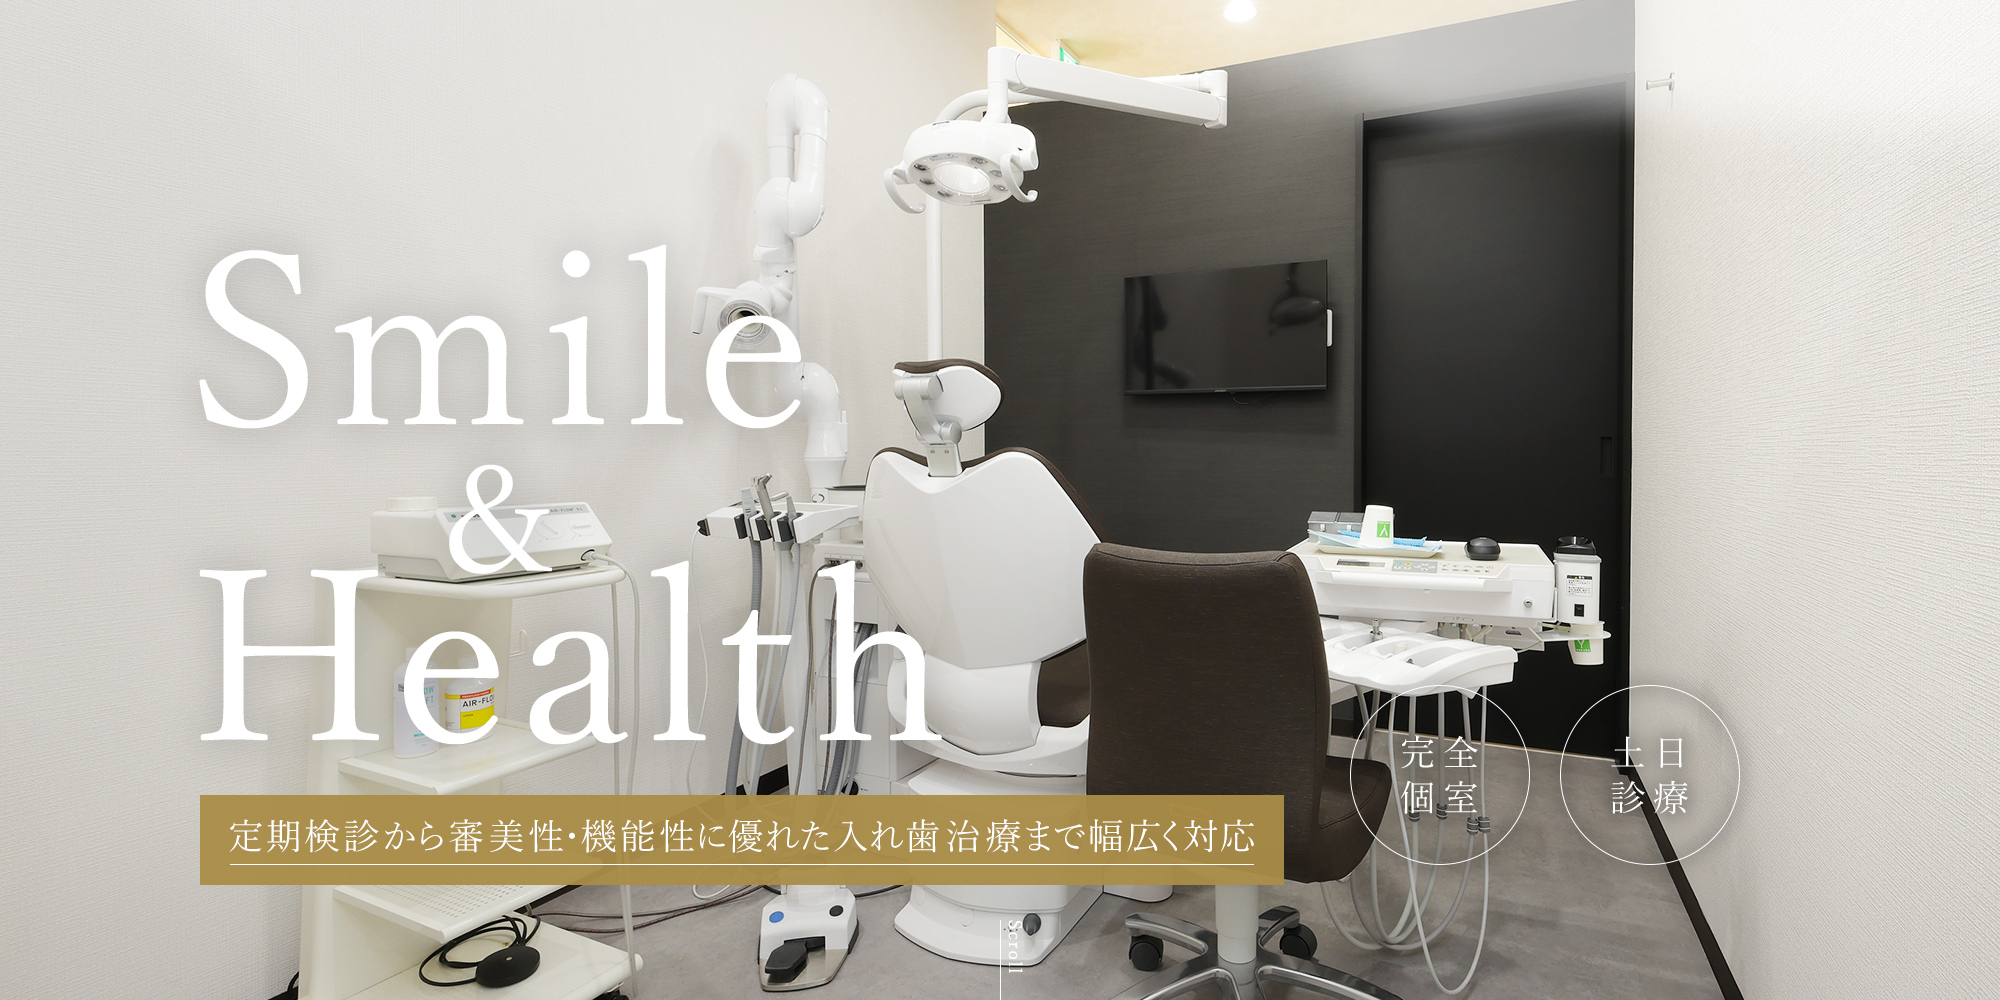 Smile&Health 定期検診から審美性・機能性に優れた入れ歯治療まで幅広く対応